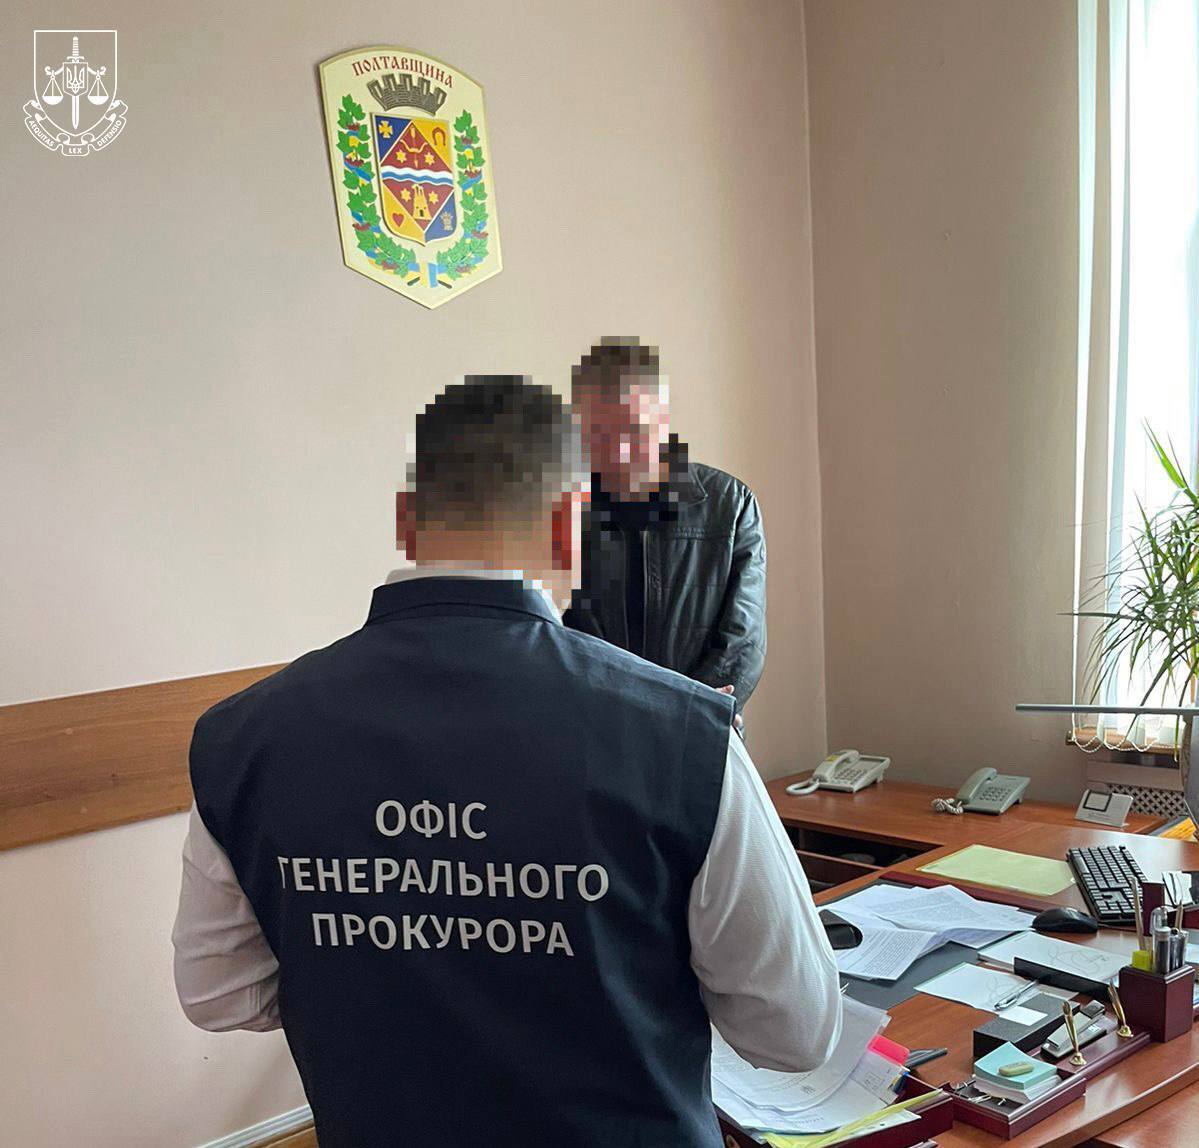 Заступника голови Полтавської облради підозрюють у злочині